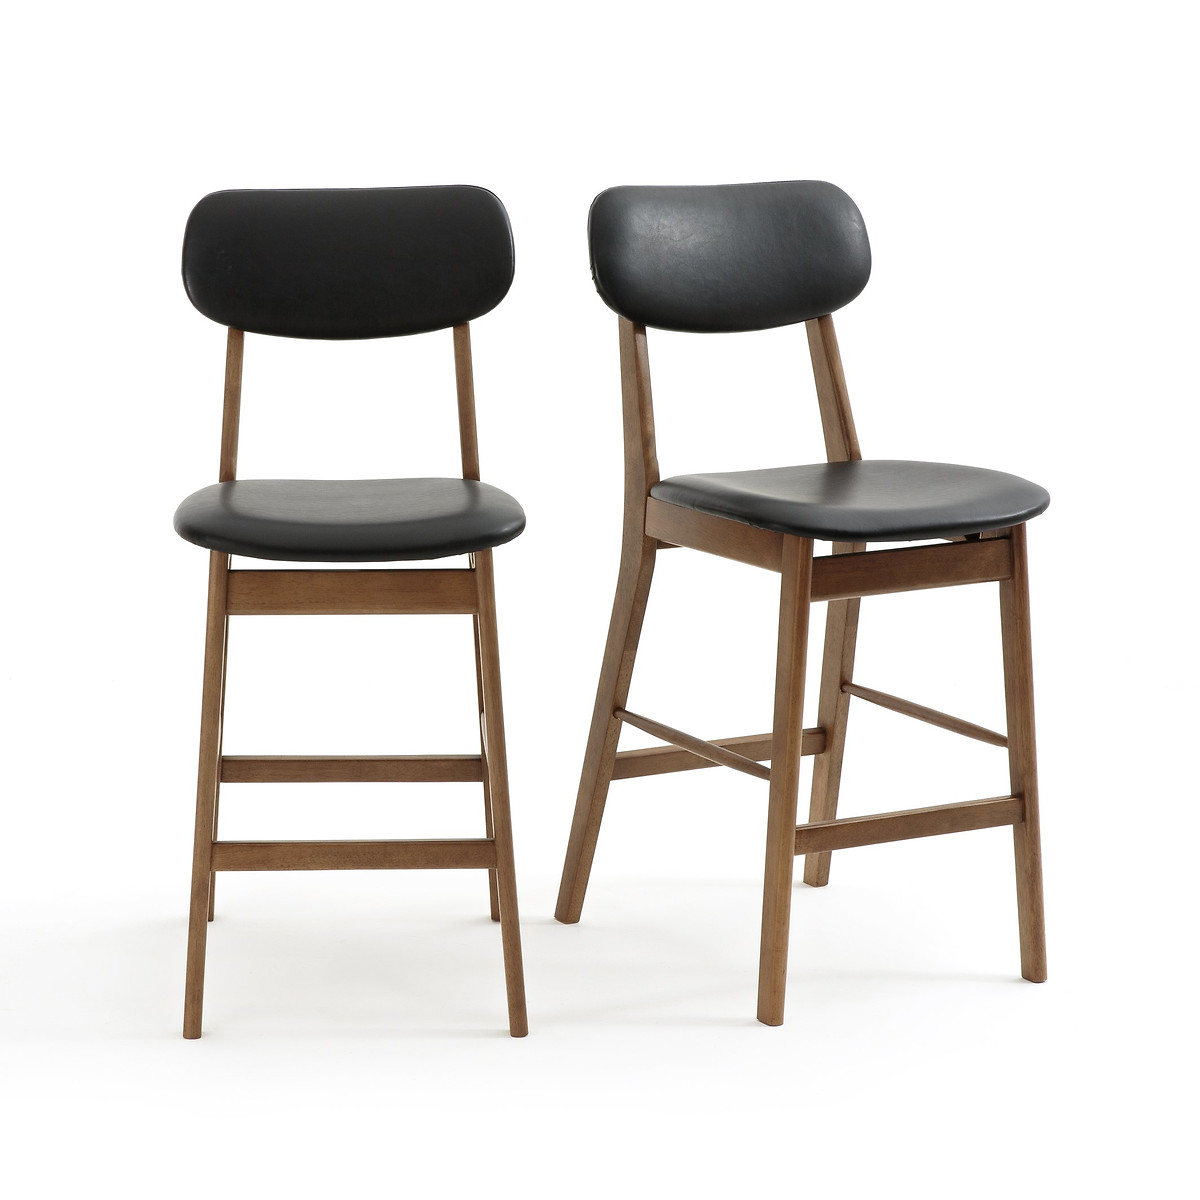 Комплект из 2 барных стульев средней высоты Watford единый размер каштановый офисные сиденья барные стулья в скандинавском стиле кухонные стулья высокие стулья в скандинавском стиле барные стулья для геймеров сто